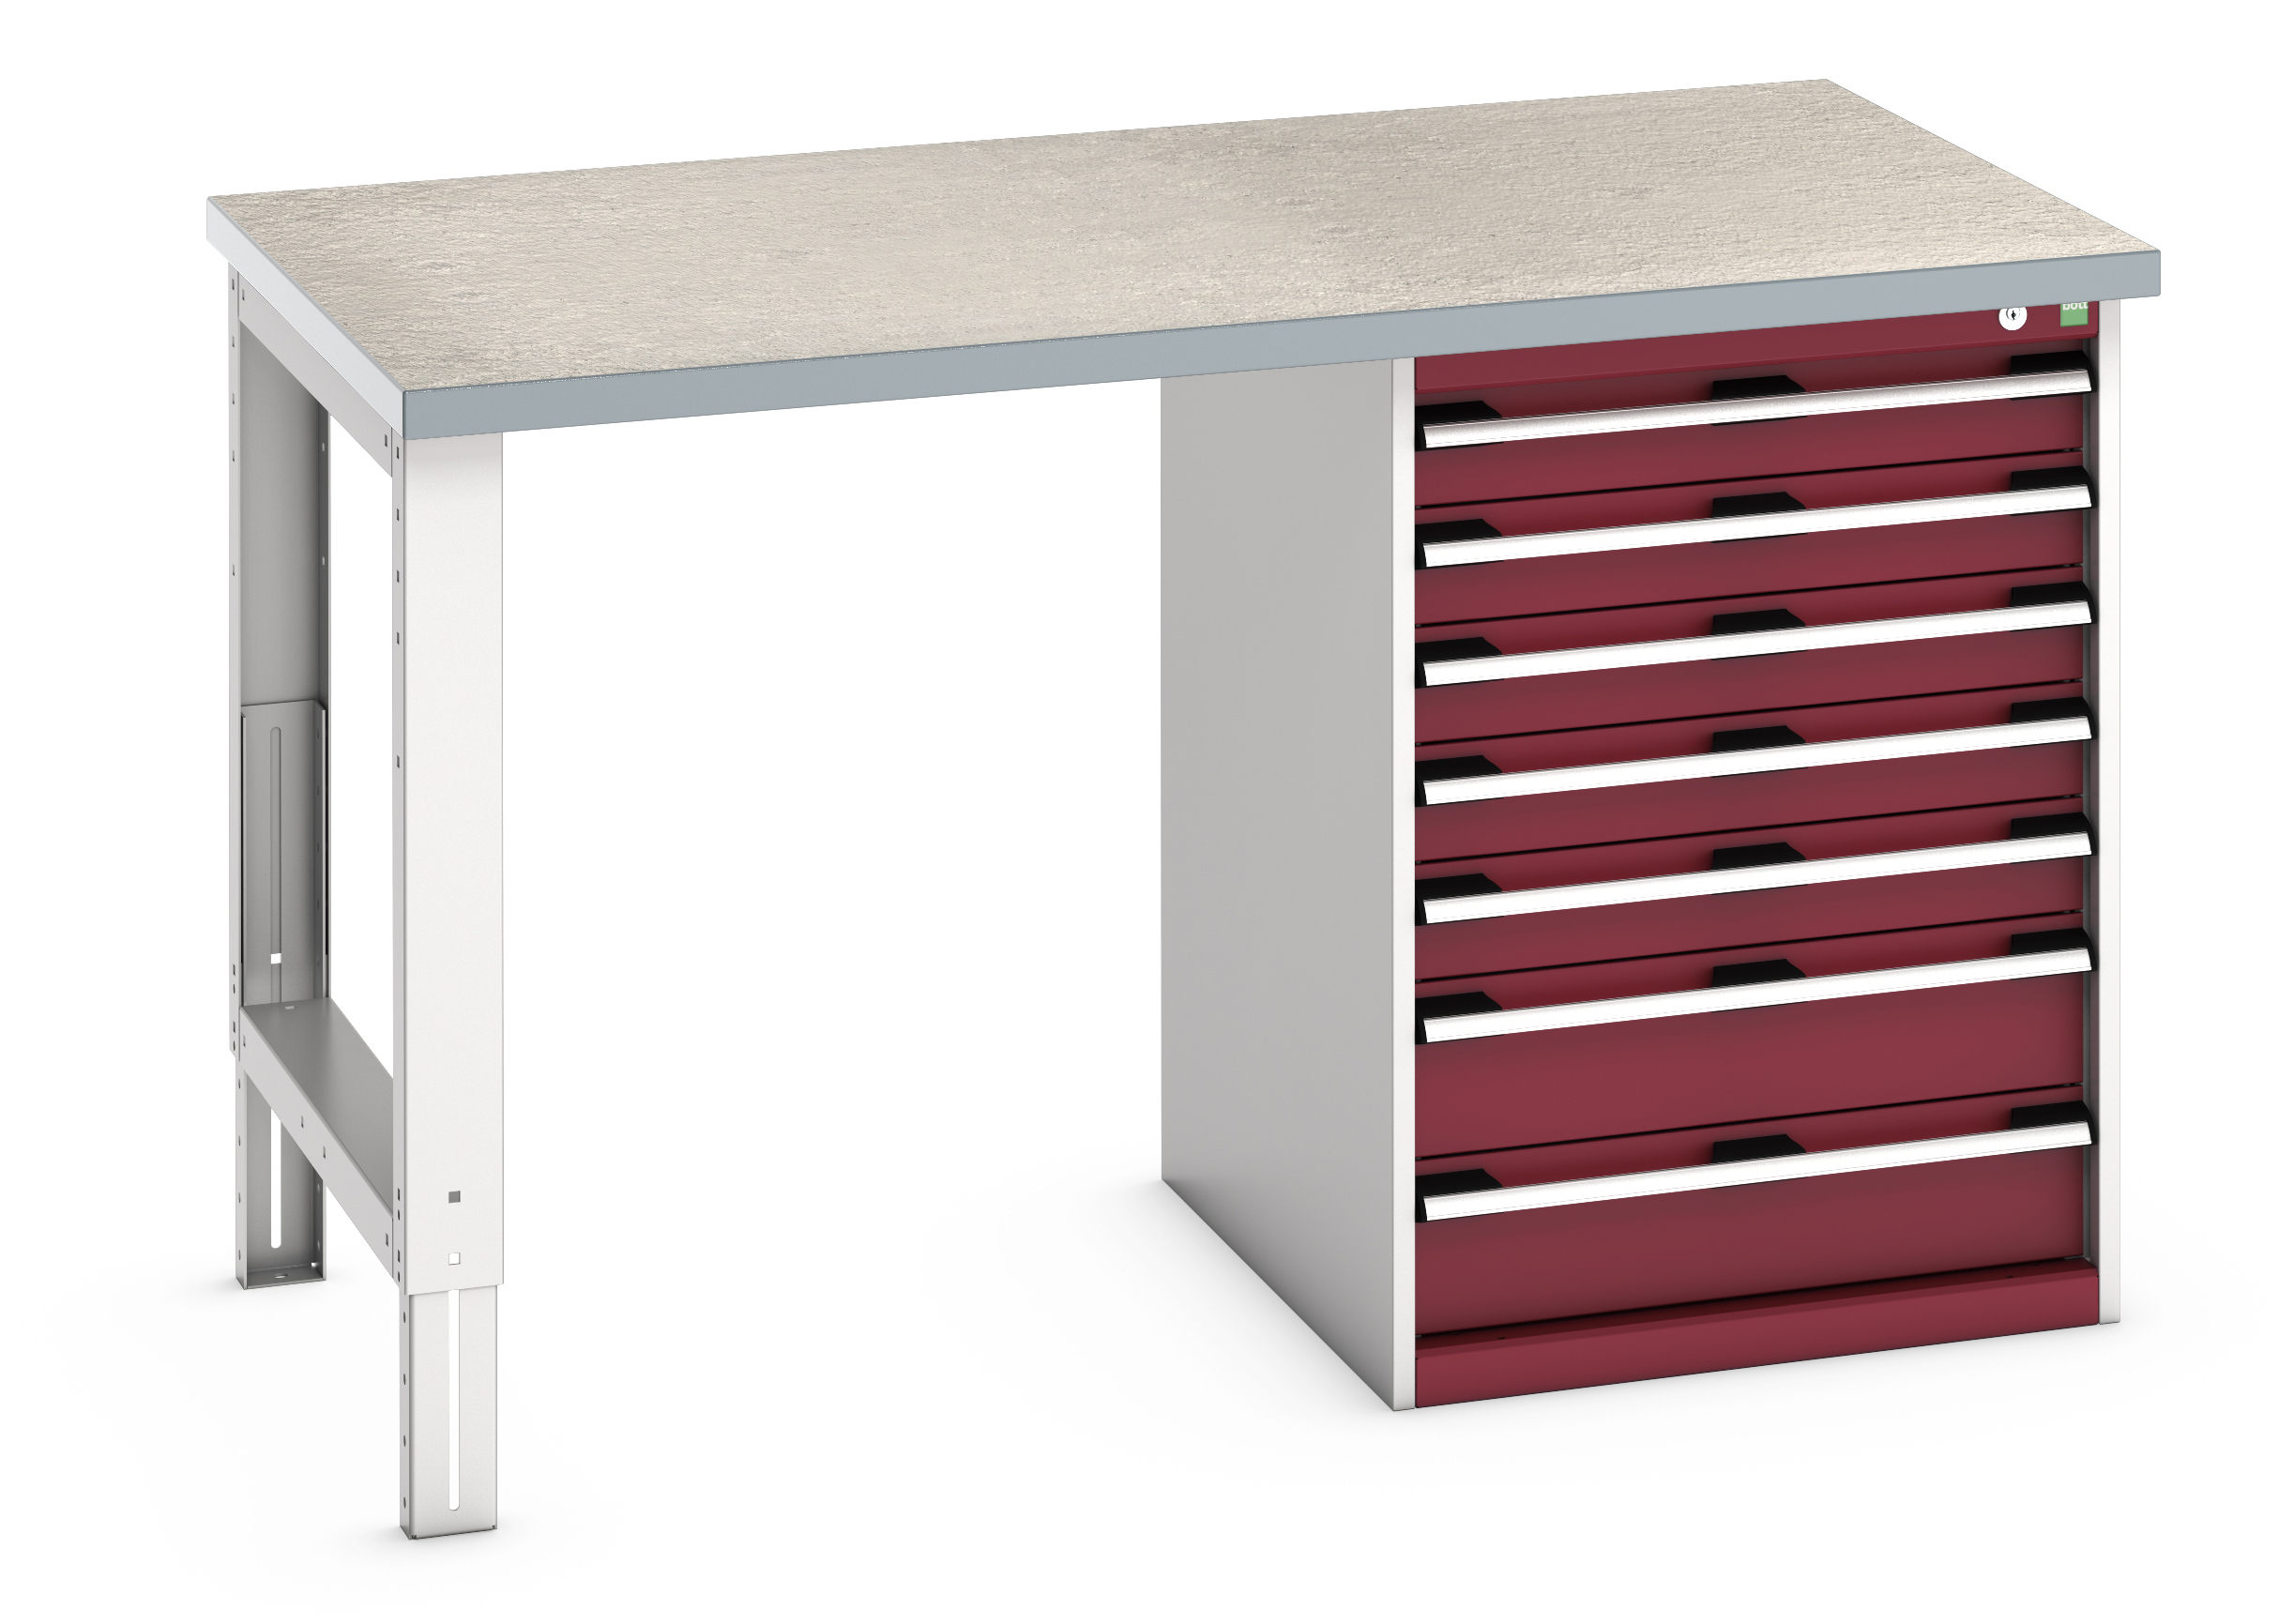 Bott Cubio Pedestal Bench With 7 Drawer Cabinet - 41003499.24V